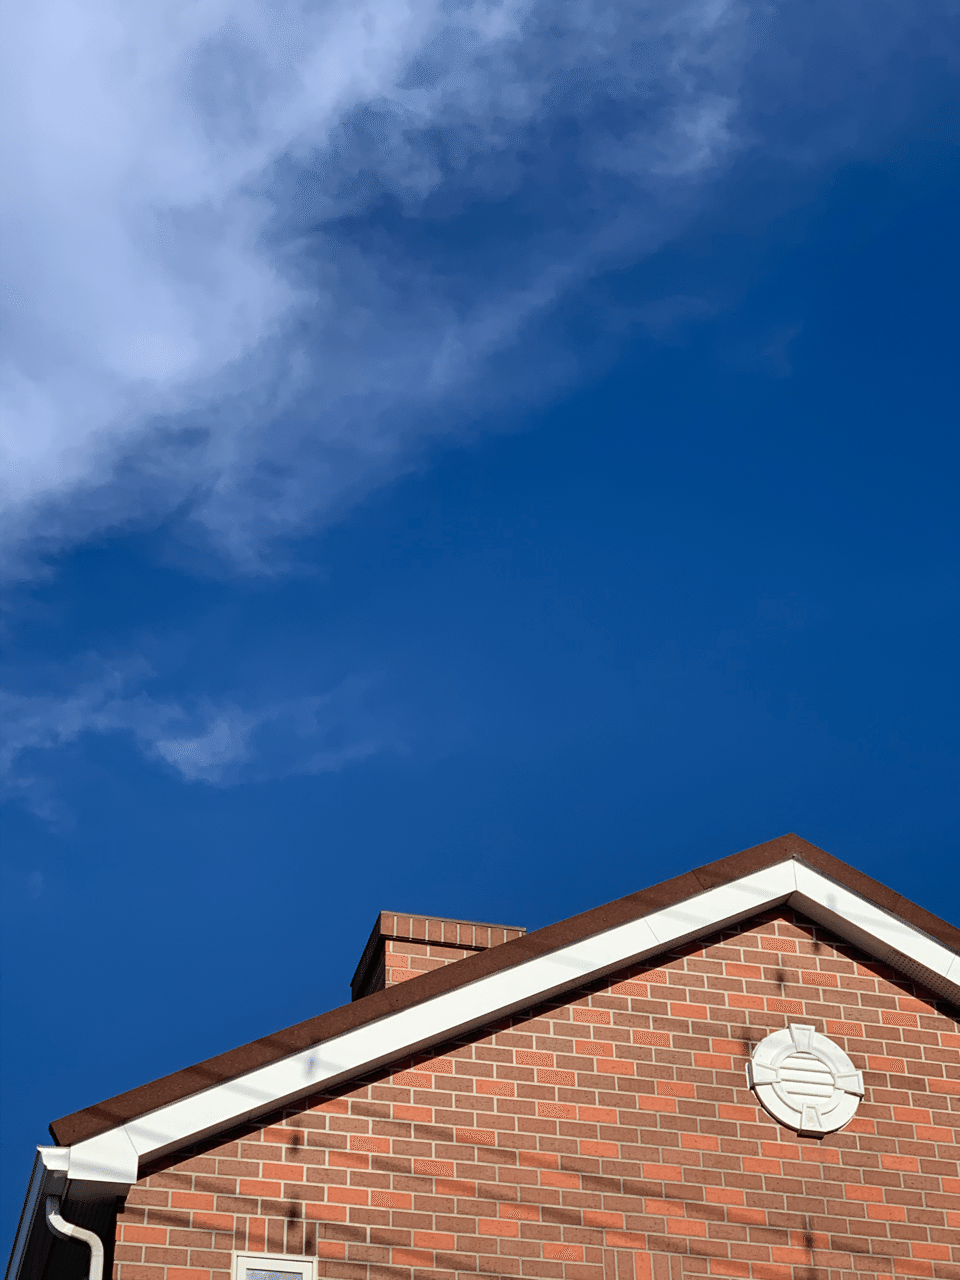 レンガの煙突付きのお家が青空に映えてる きょうやん503 Note